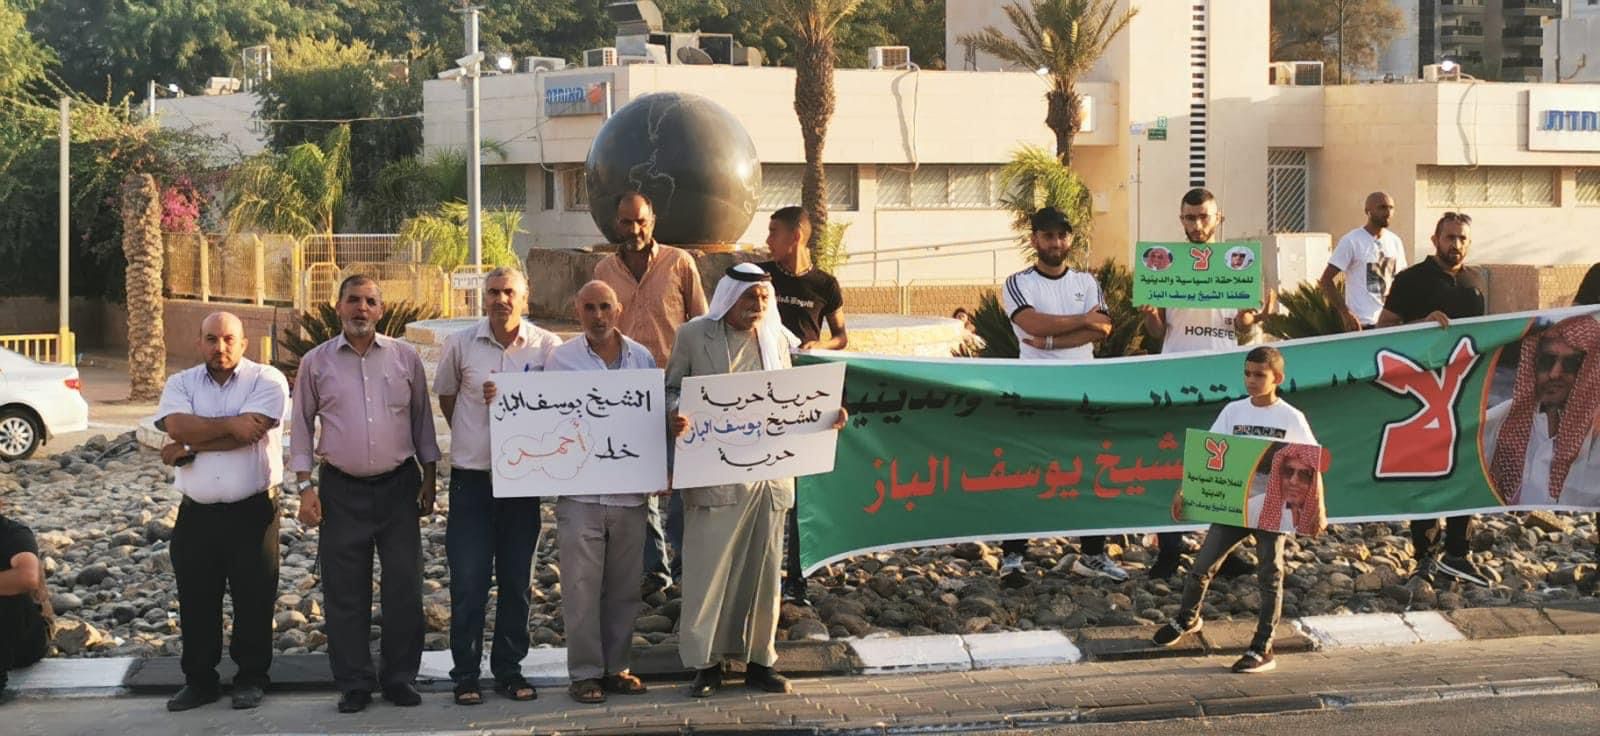 وقفة احتجاجية أمام مستشفى سوروكا للمطالبة بالإفراج عن الشيخ يوسف الباز 